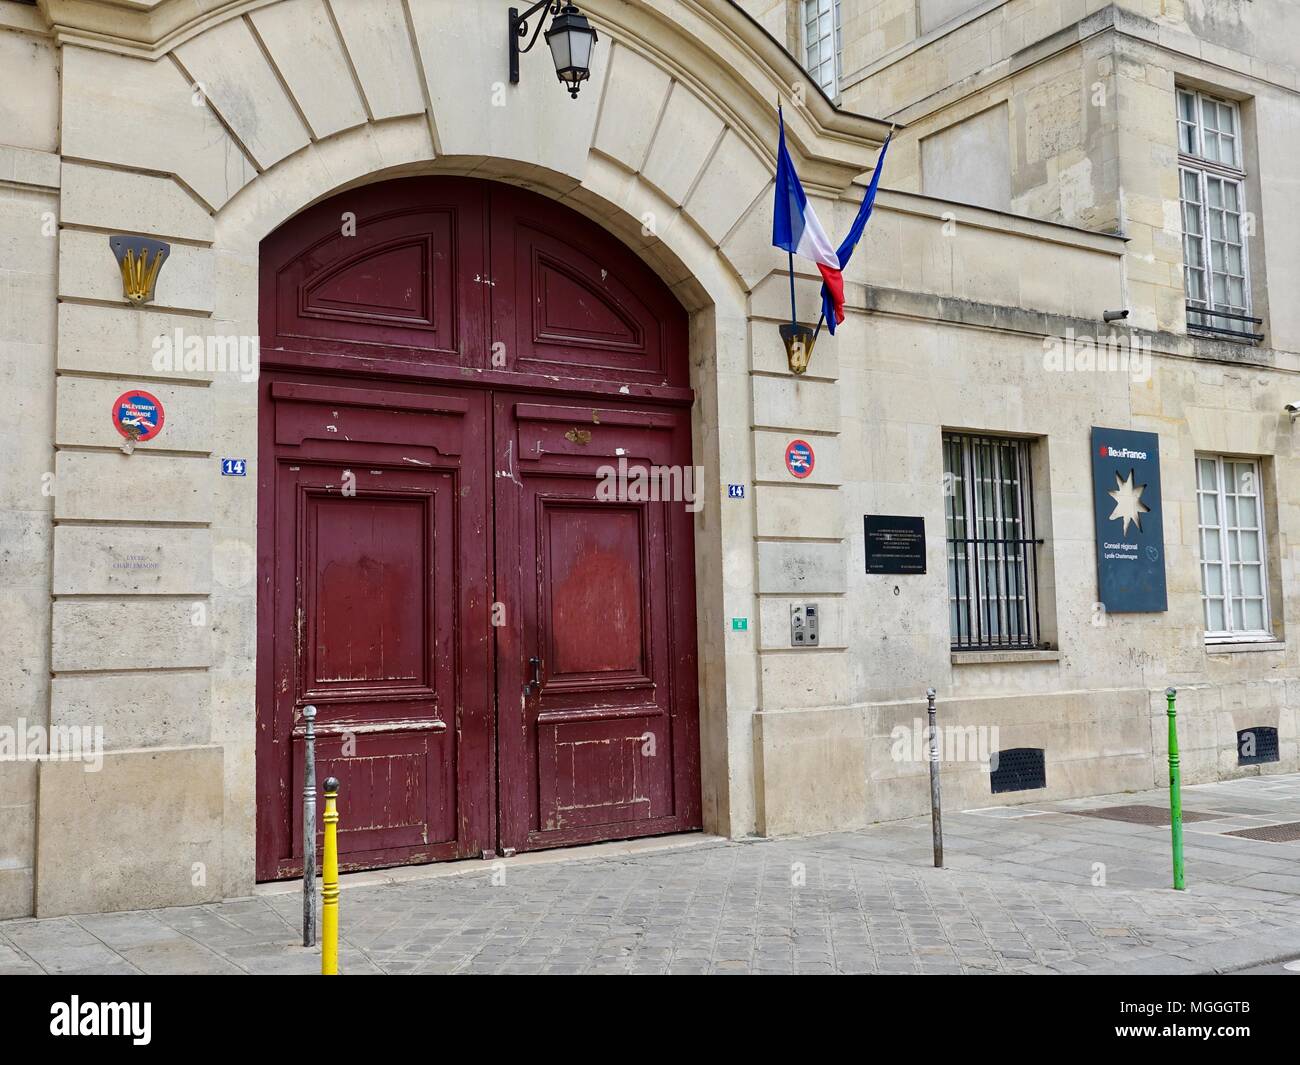 Portes rouges du Lycée Charlemagne (école secondaire française), situé dans le Marais, Paris, France. Banque D'Images